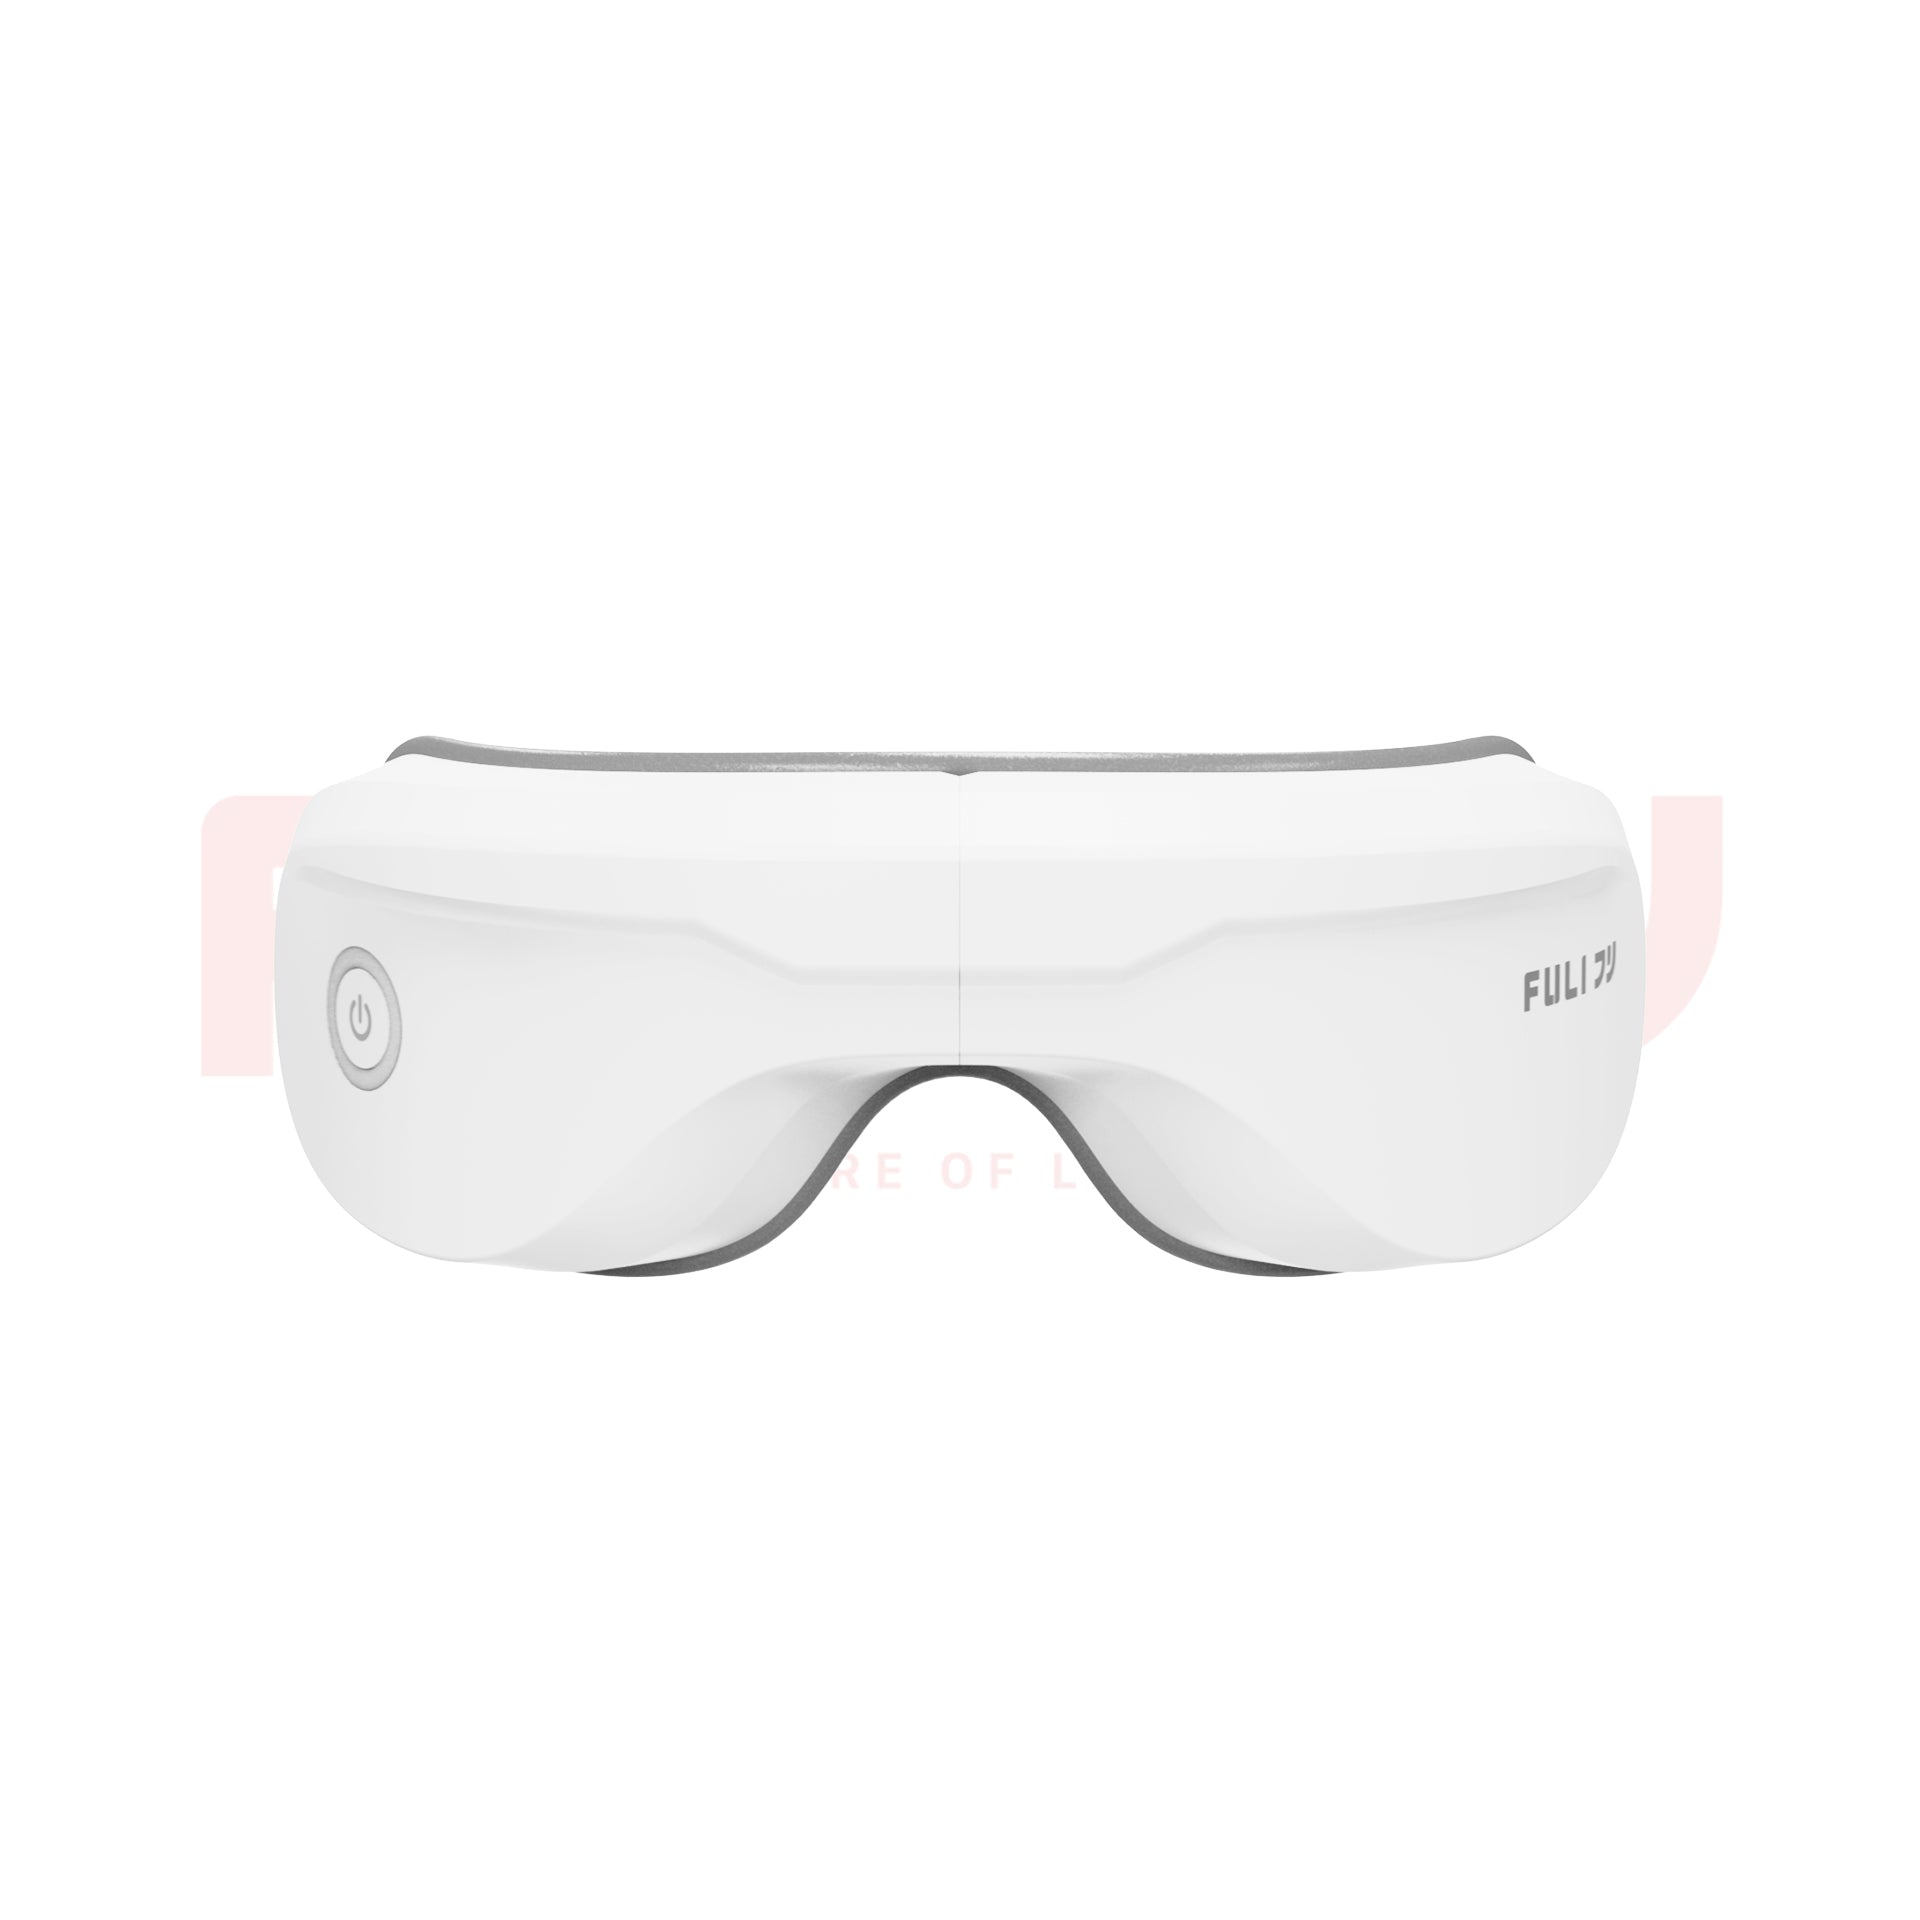 เซตหน้าผมสุดปัง FULI IONIC Styling Brush + 4D Smart Eye Massager